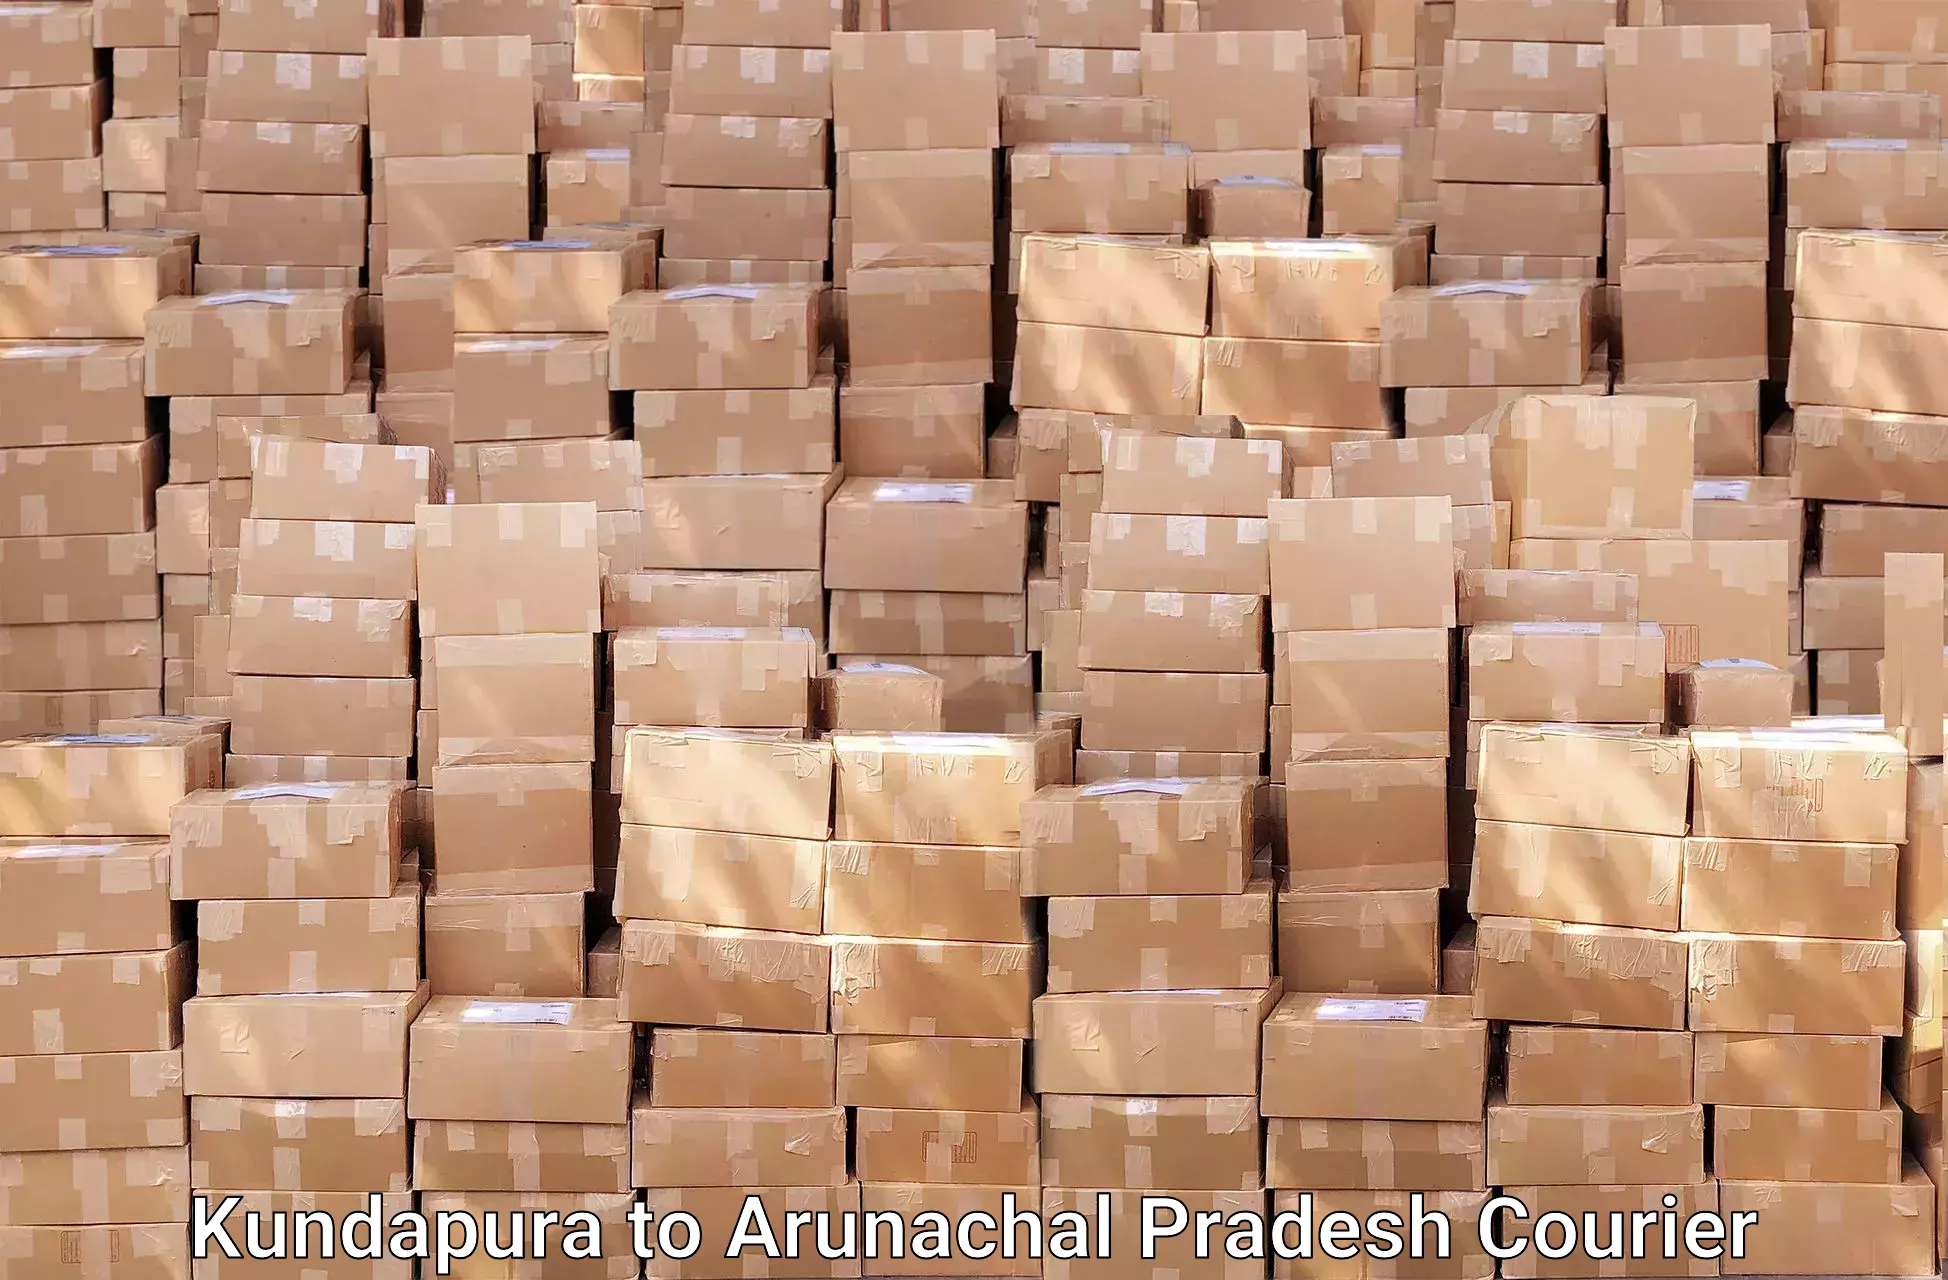 Hassle-free relocation Kundapura to Arunachal Pradesh